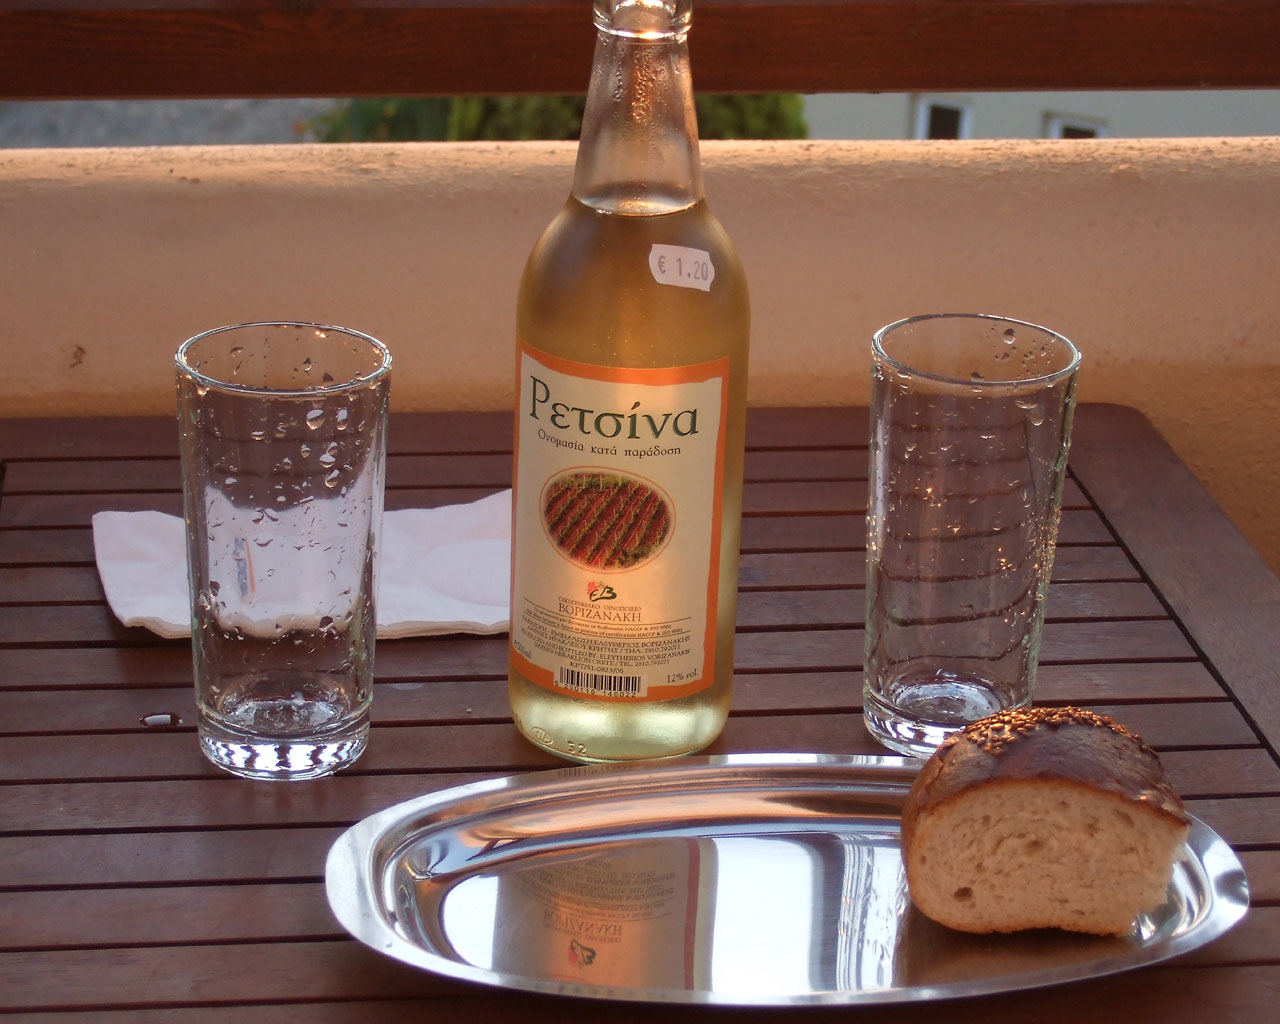 Вечер. На балконе деревянный стол.
      На столе бутылка вина Рецина, два стакана и ломоть хлеба. 